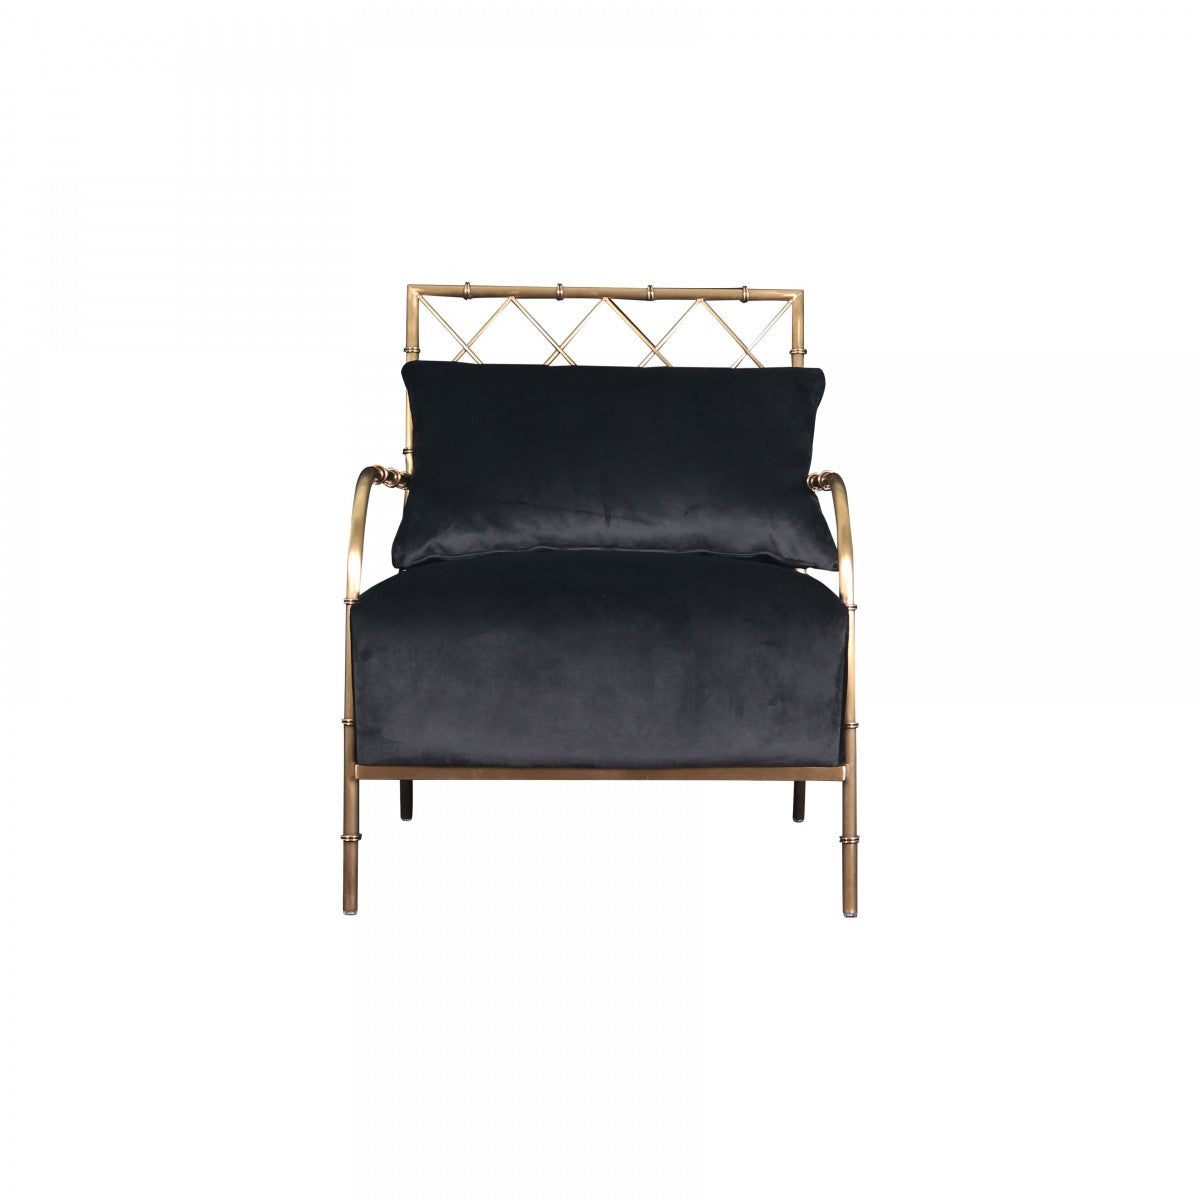 Divani Casa Ignacio - Glam Black Velvet & Gold Accent Chair